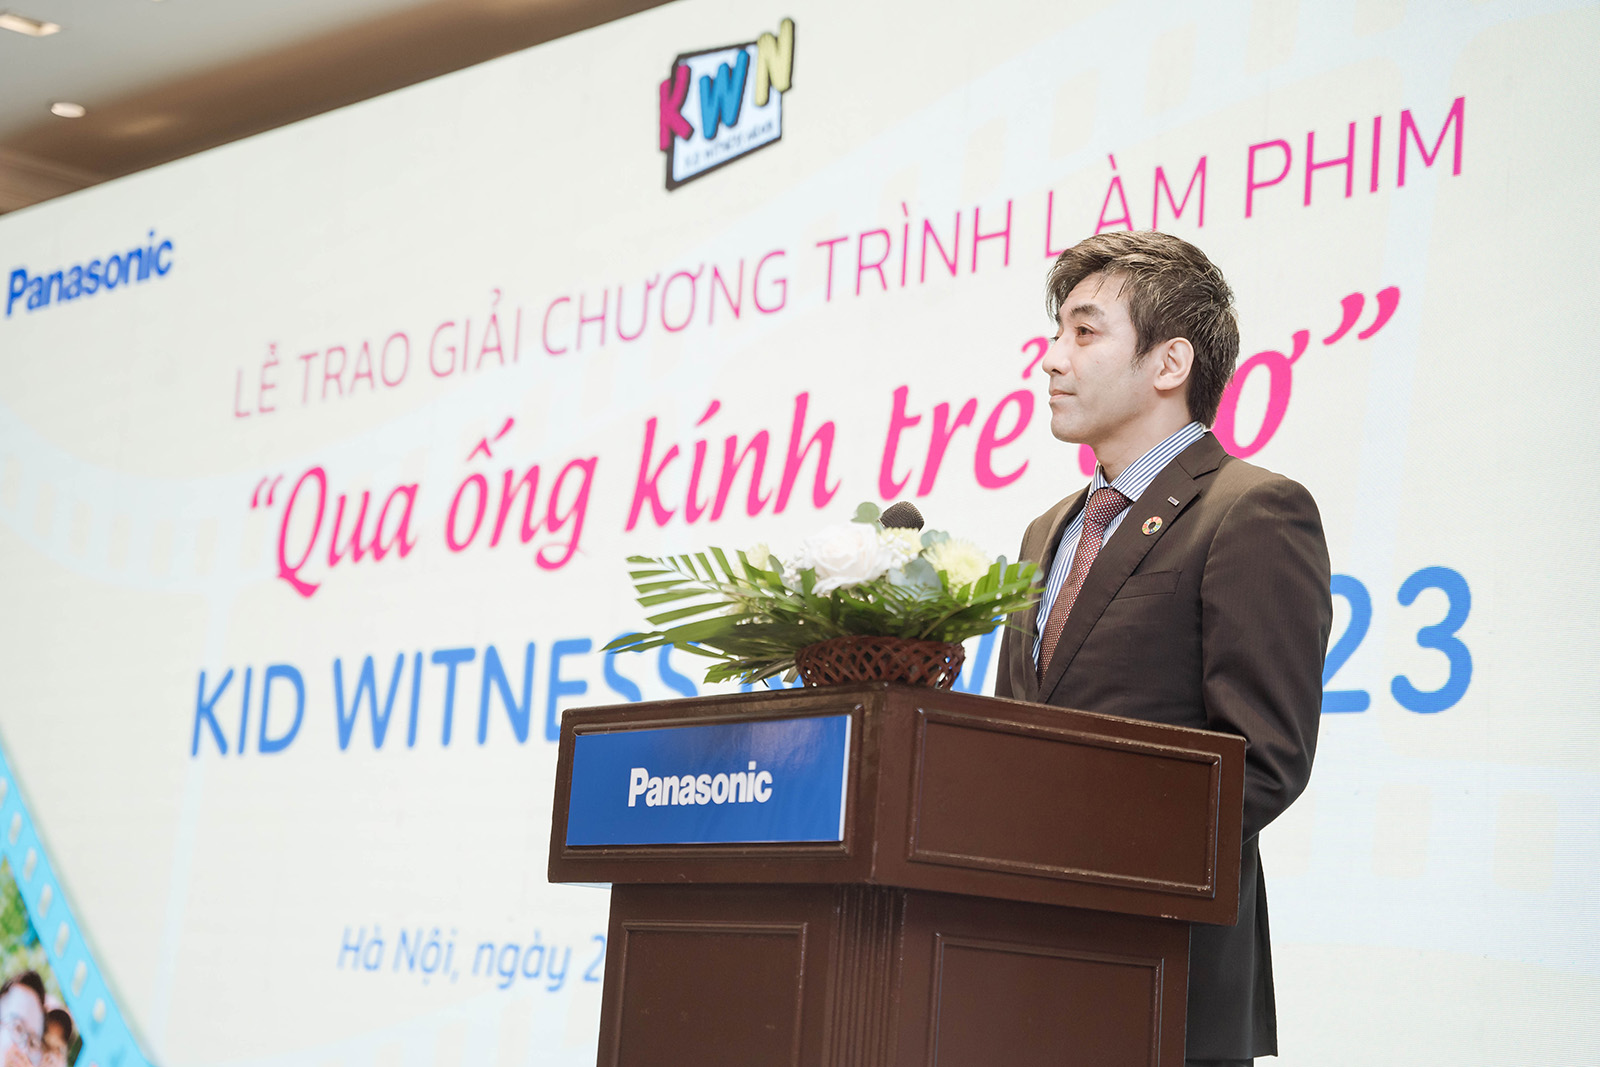 Photo: Mr. Hiroyuki Oka, Director of Panasonic Vietnam